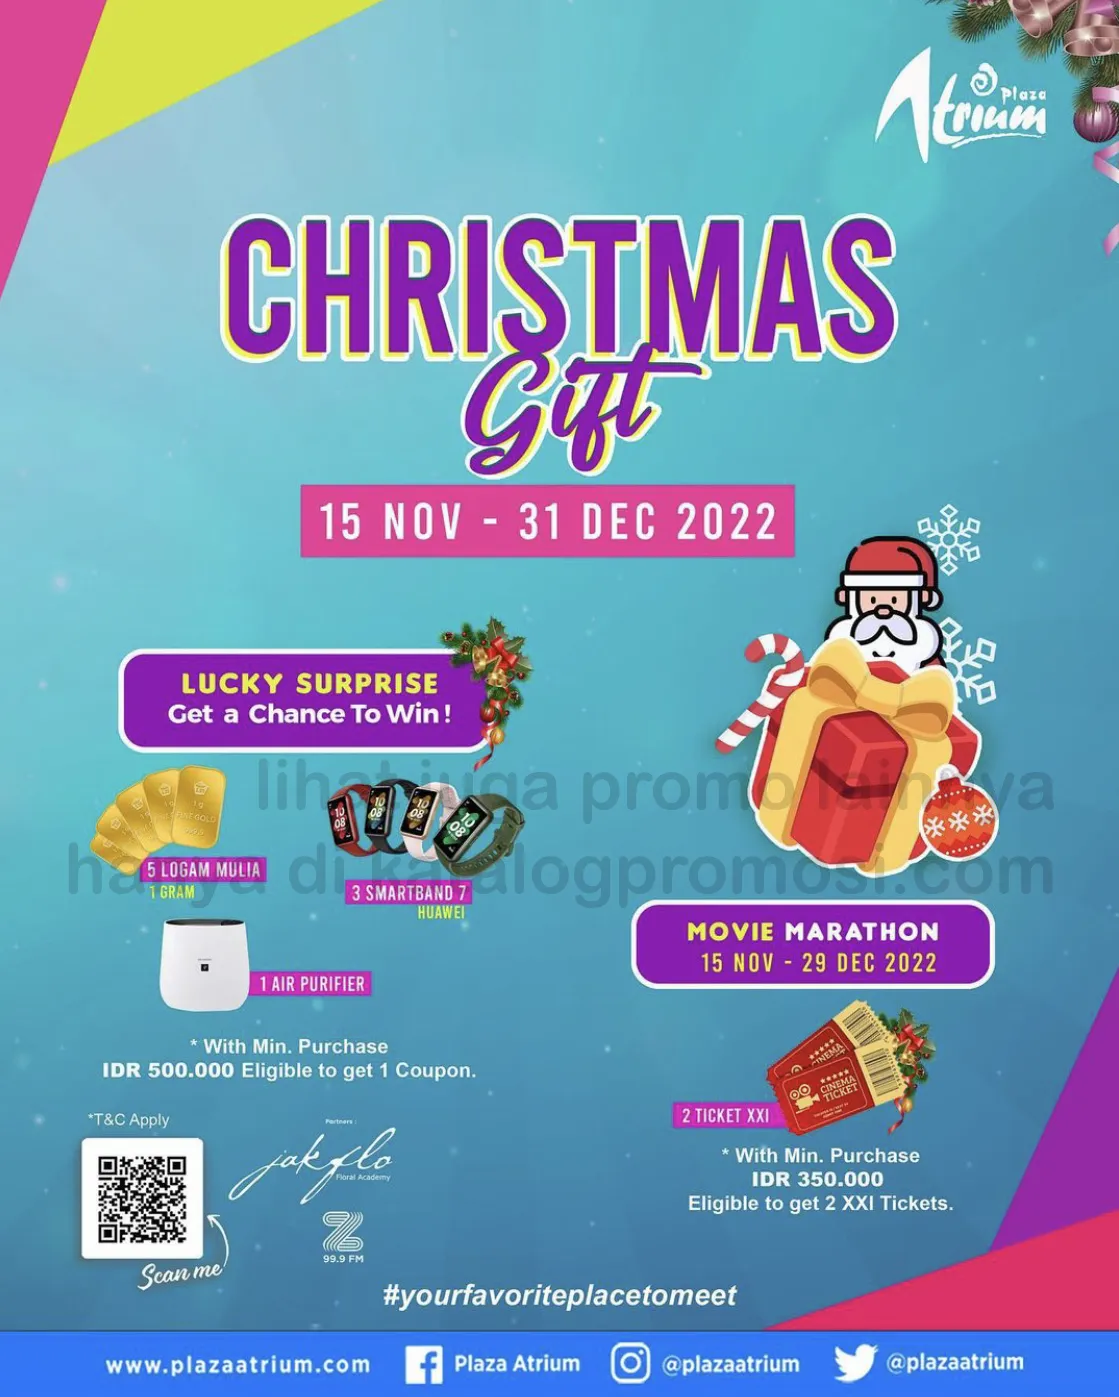 PLAZA ATRIUM CHRISTMAS GIFT khusus untuk pemegang Passcard Member! mulai tanggal 15 November - 31 Desember 2022